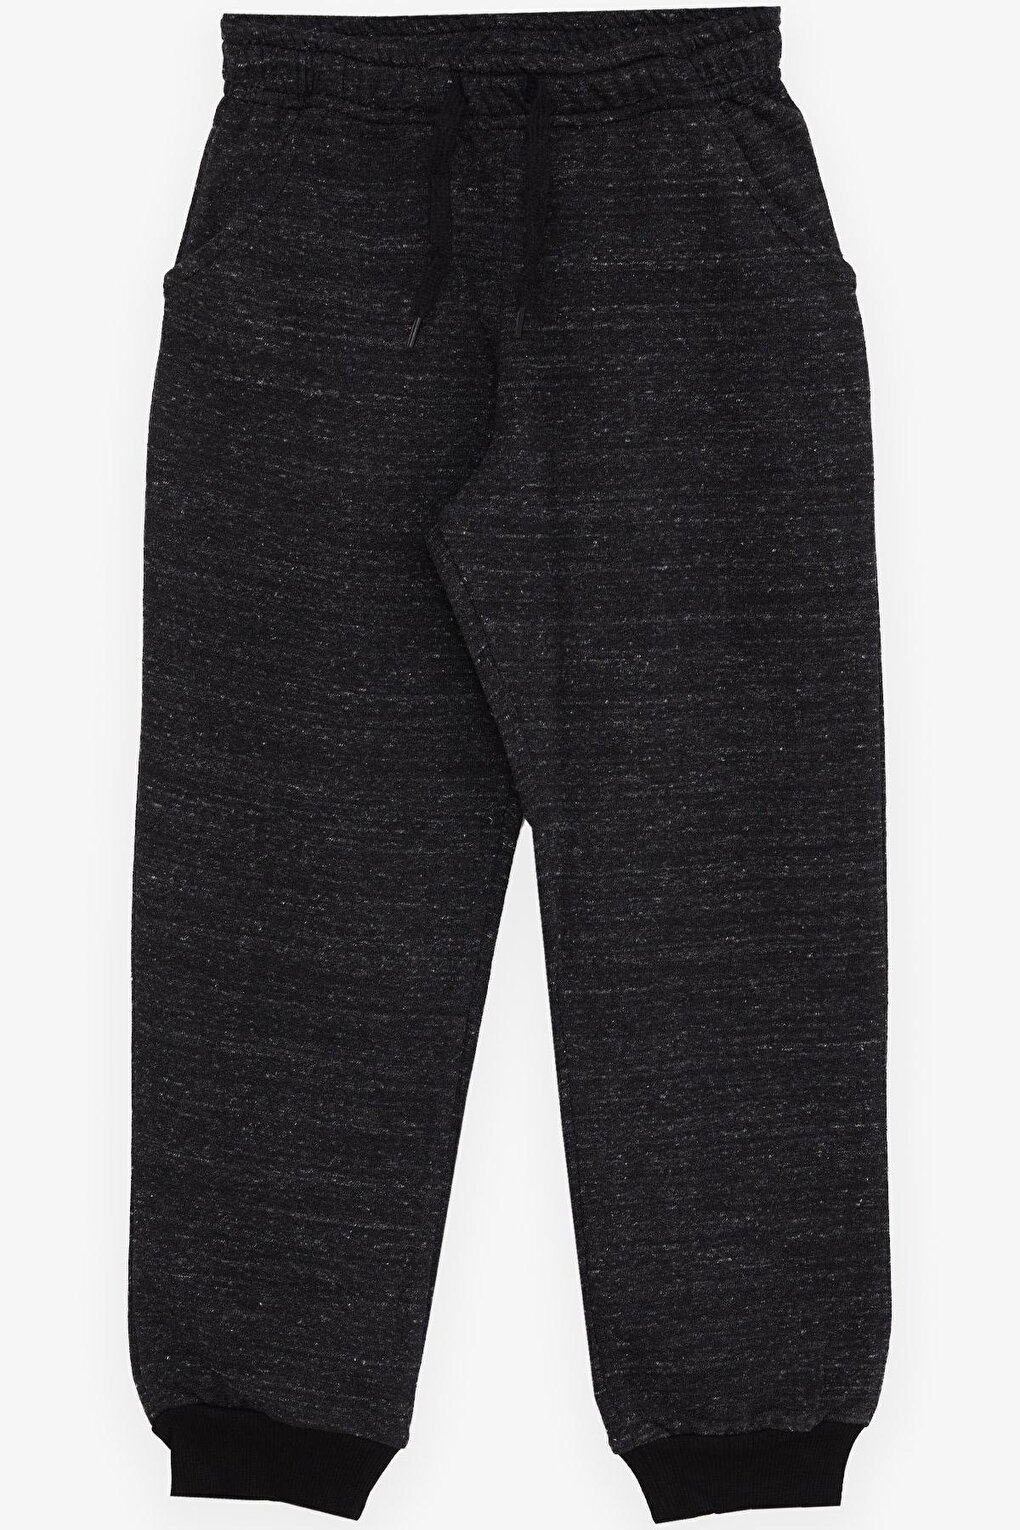 Спортивные штаны для мальчиков дымчатый меланж (7-9 лет) Breeze штаны kiabi нежные на 7 лет